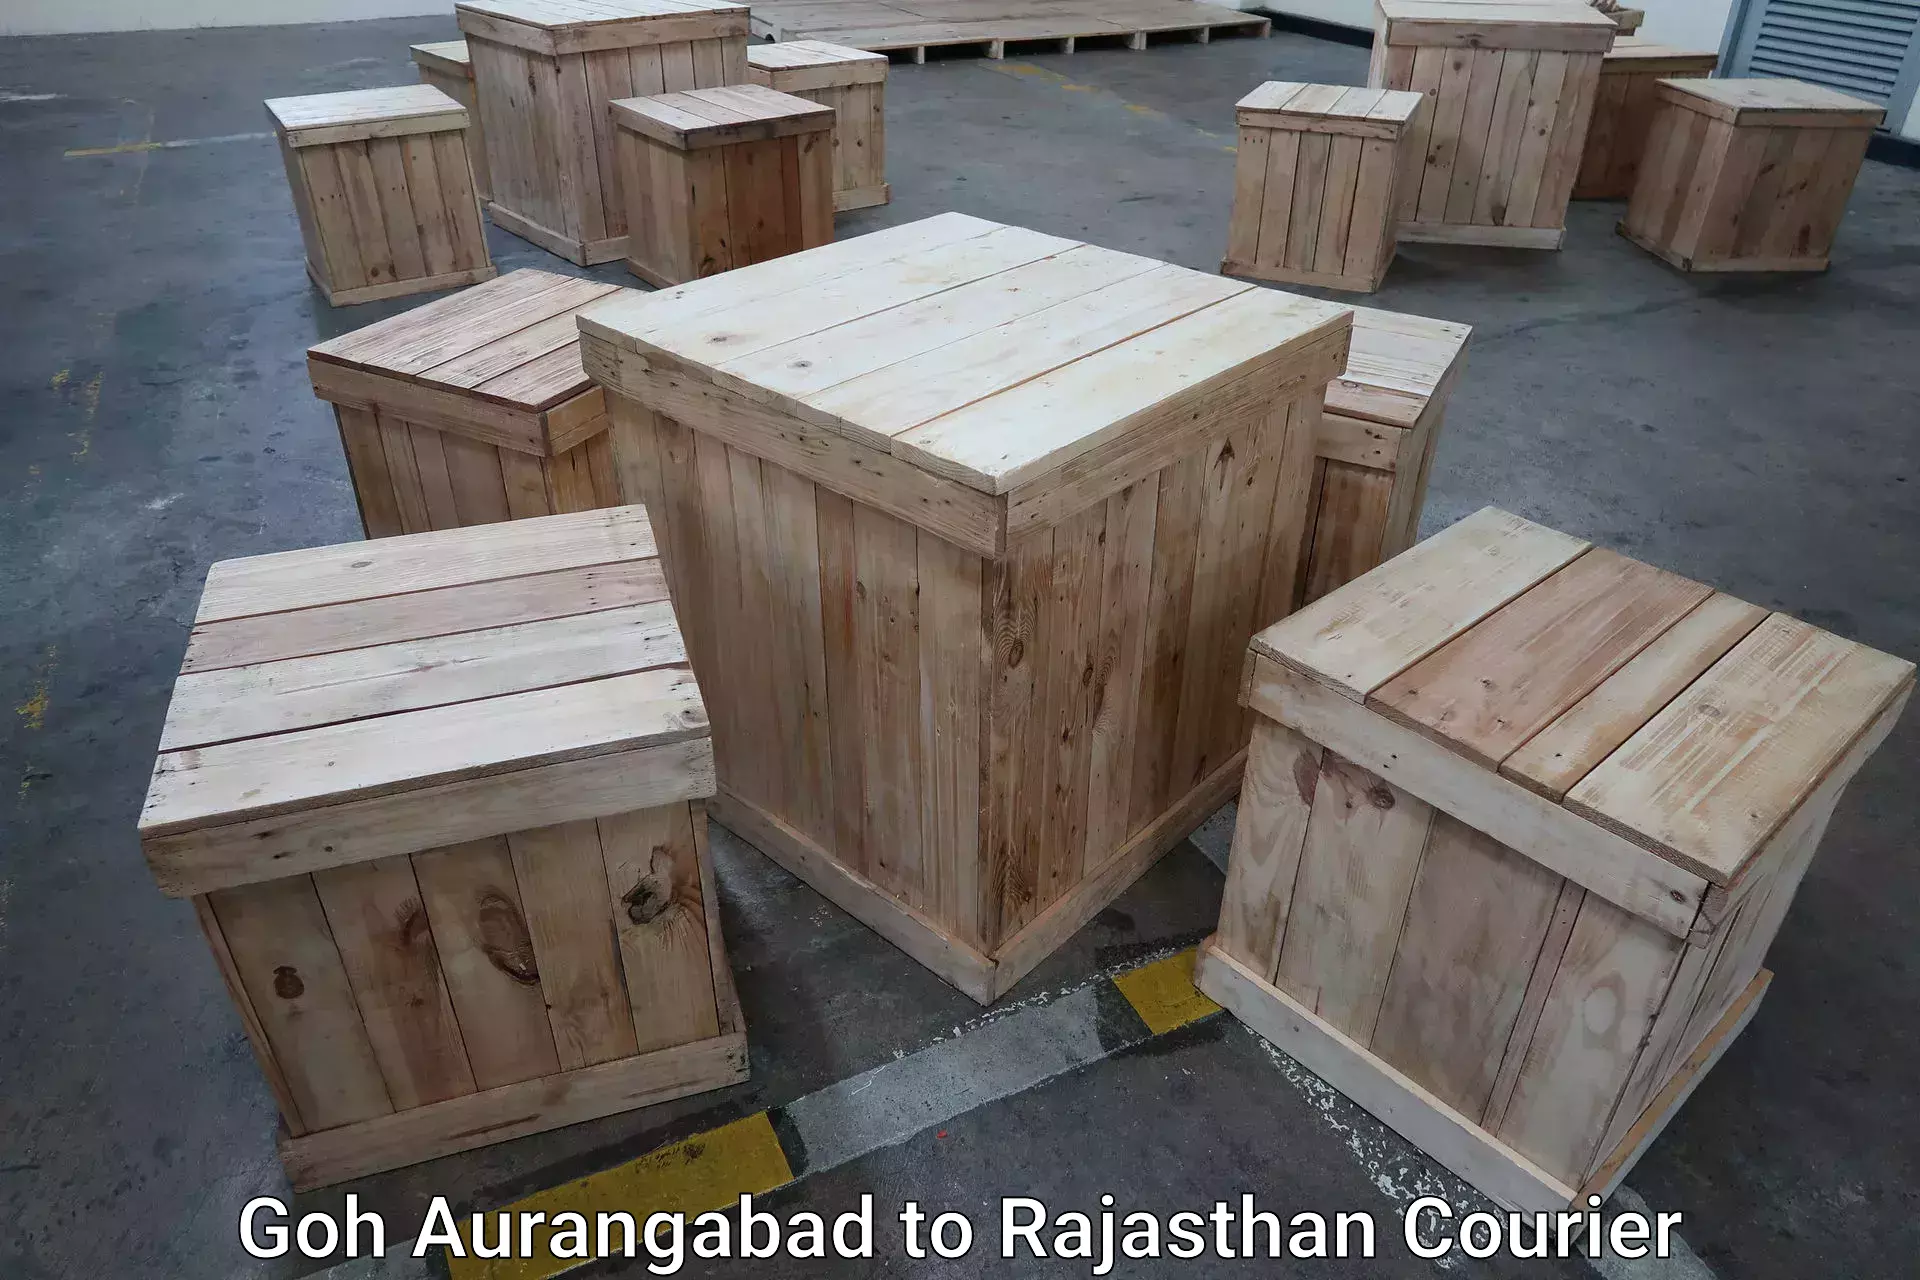 Baggage delivery management Goh Aurangabad to Rajasthan